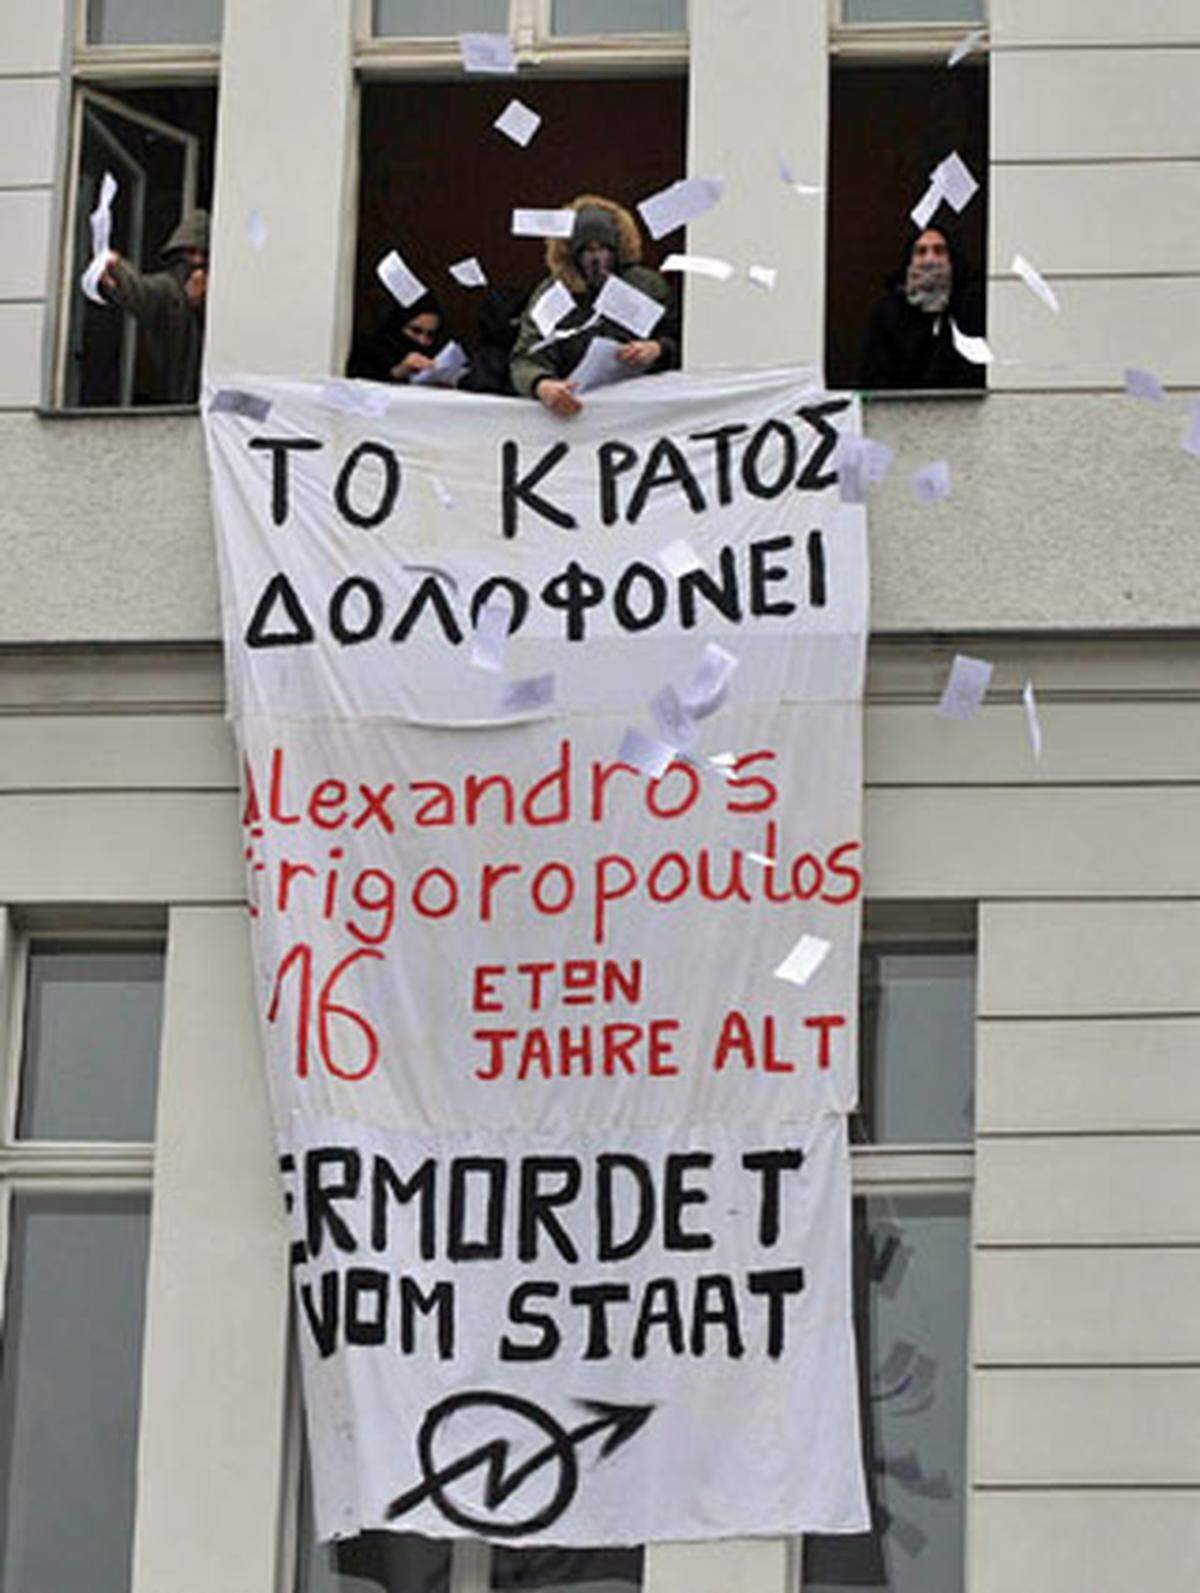 Im Ausland stimmt man in den Protest ein. Linke Aktivisten tun ihre Meinung aus dem griechischen Konsulat in Berlin kund: Der 15-Jährige "ermordet vom Staat".